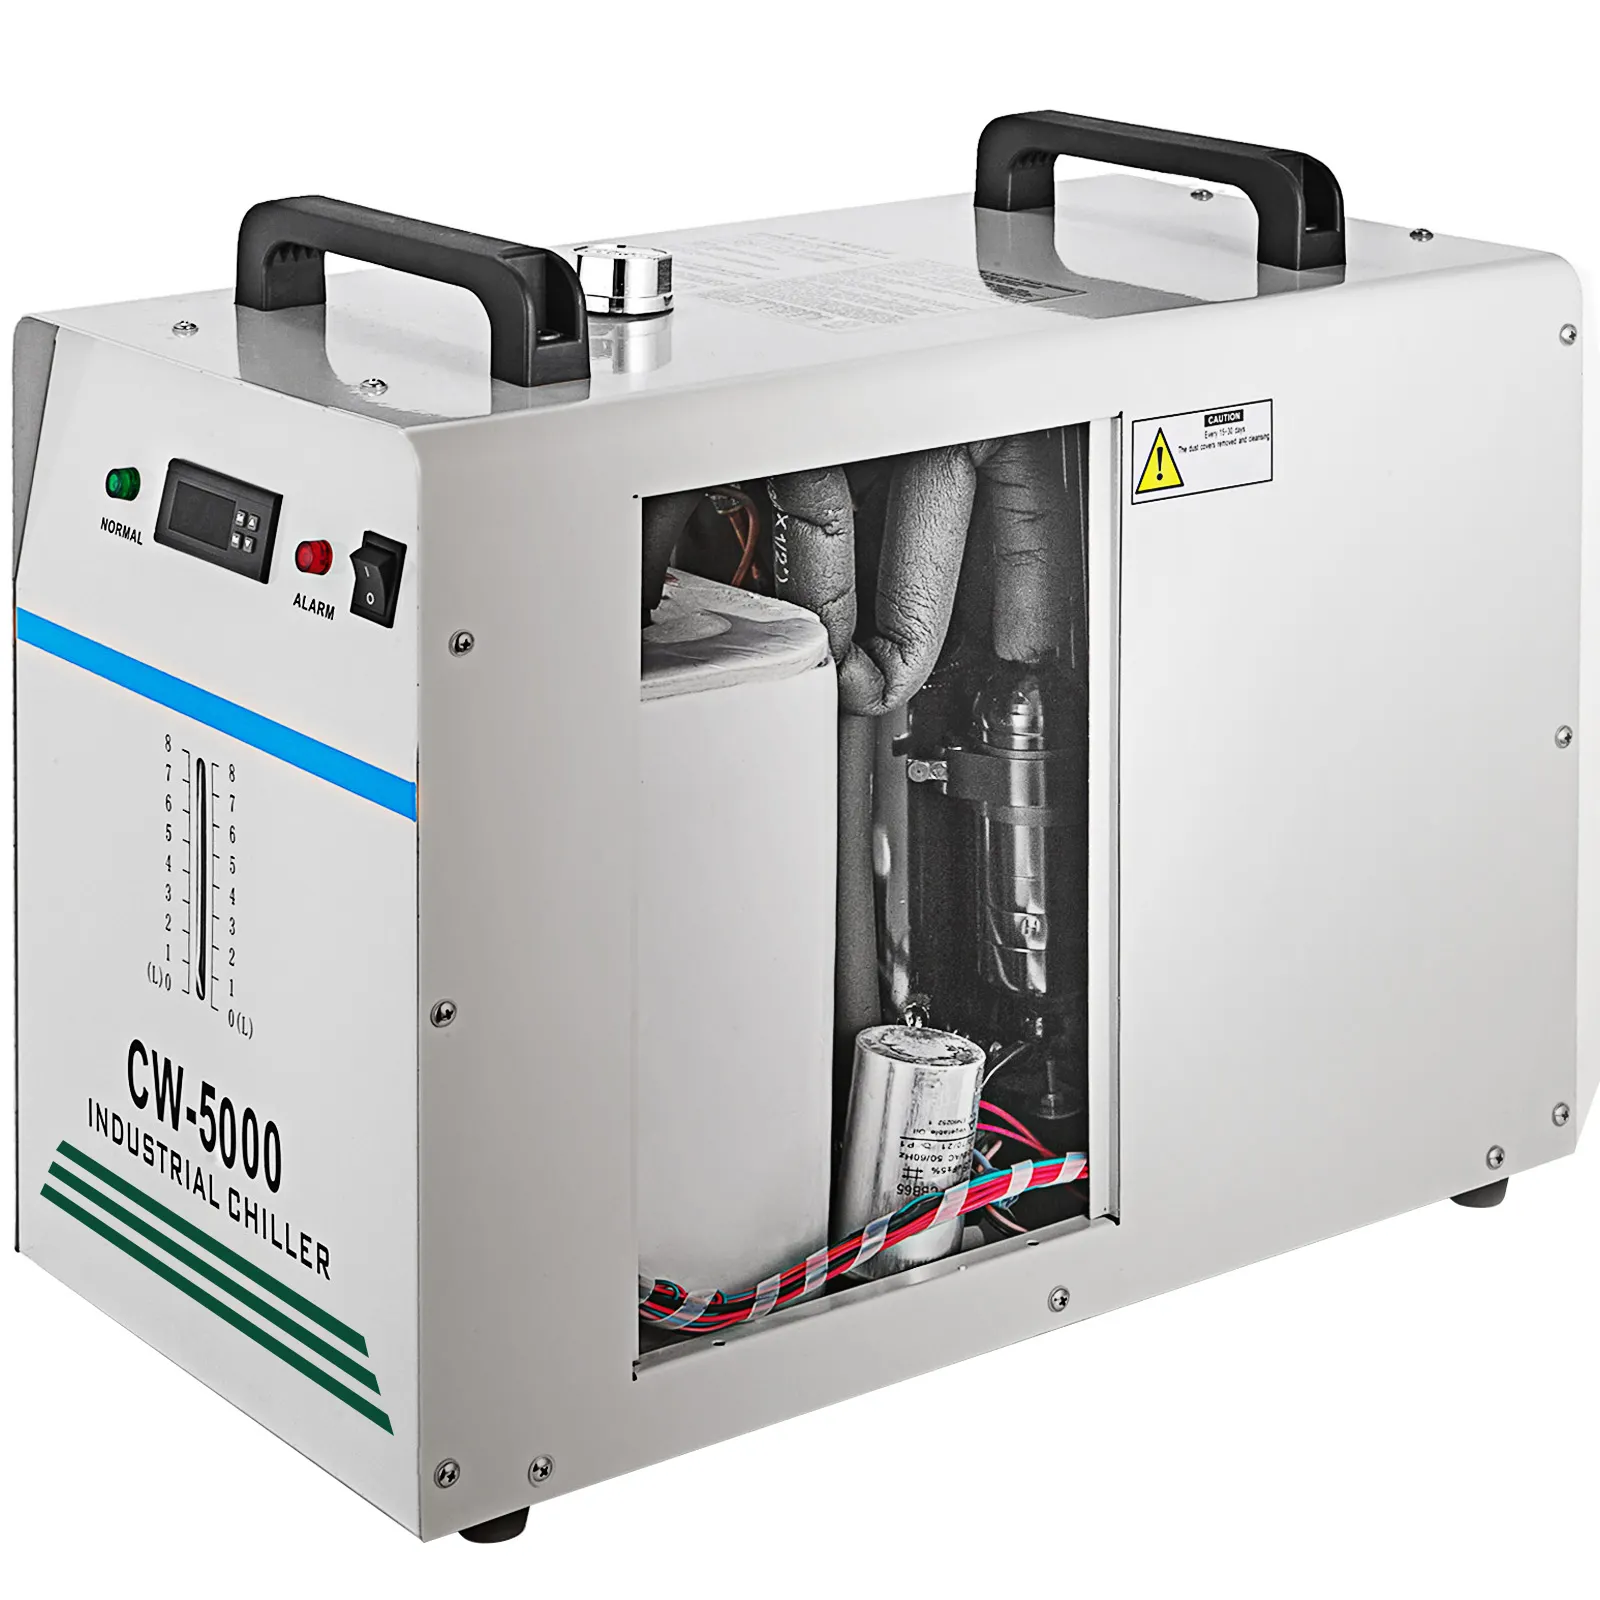 PEIXU CE CW-5200 pendingin air untuk mesin Laser CO2 harga pabrik kondisi baru 220v berpendingin air